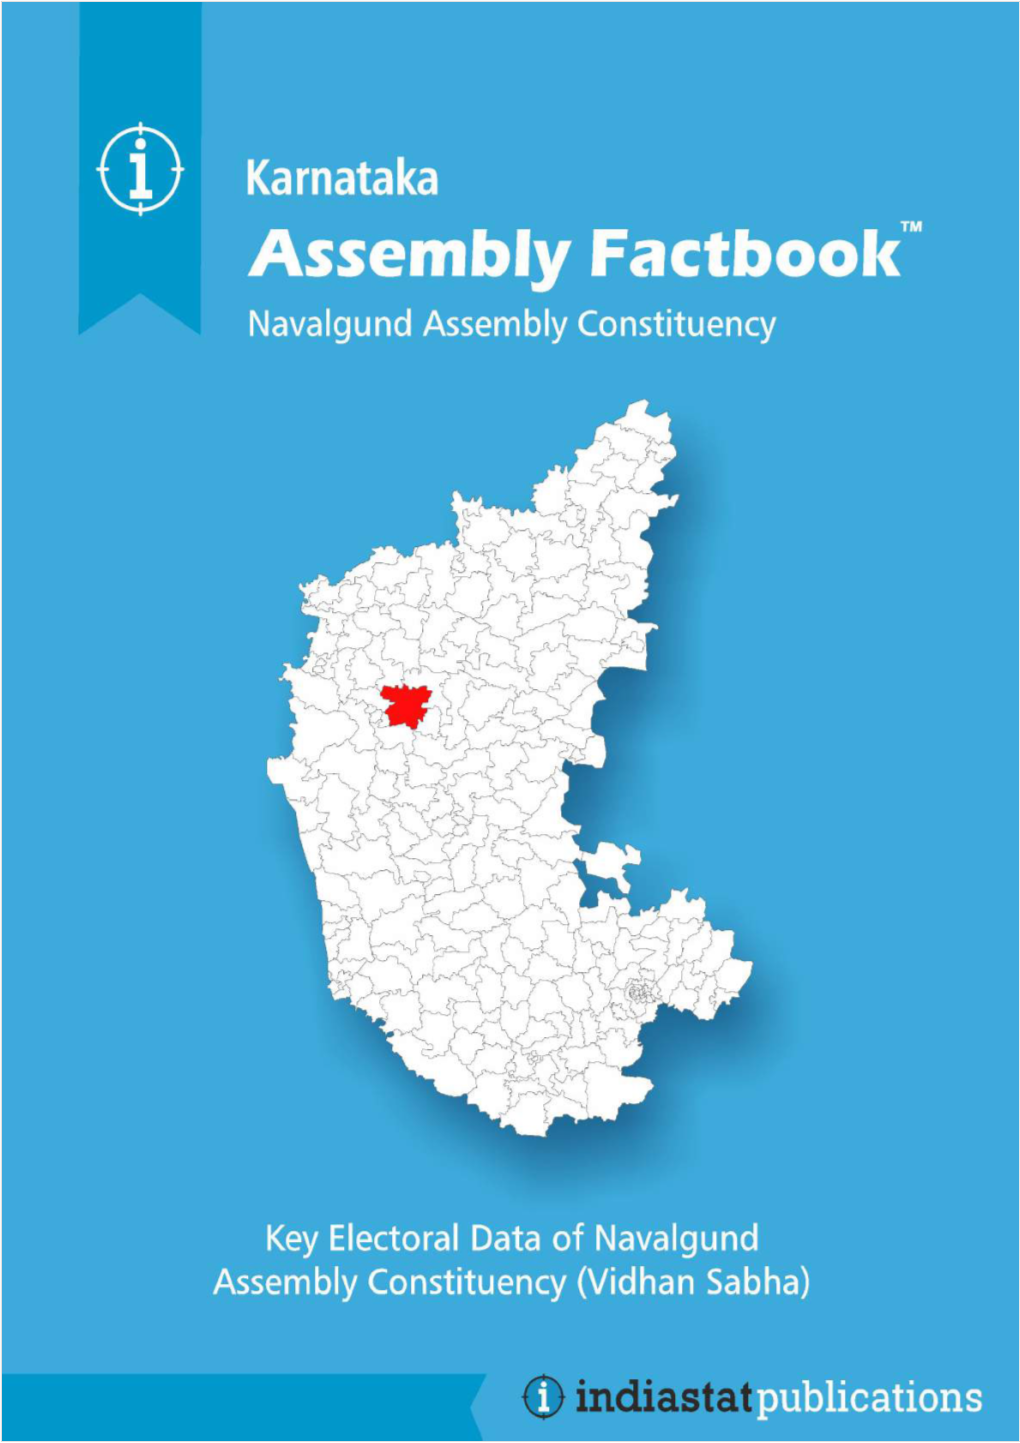 Navalgund Assembly Karnataka Factbook